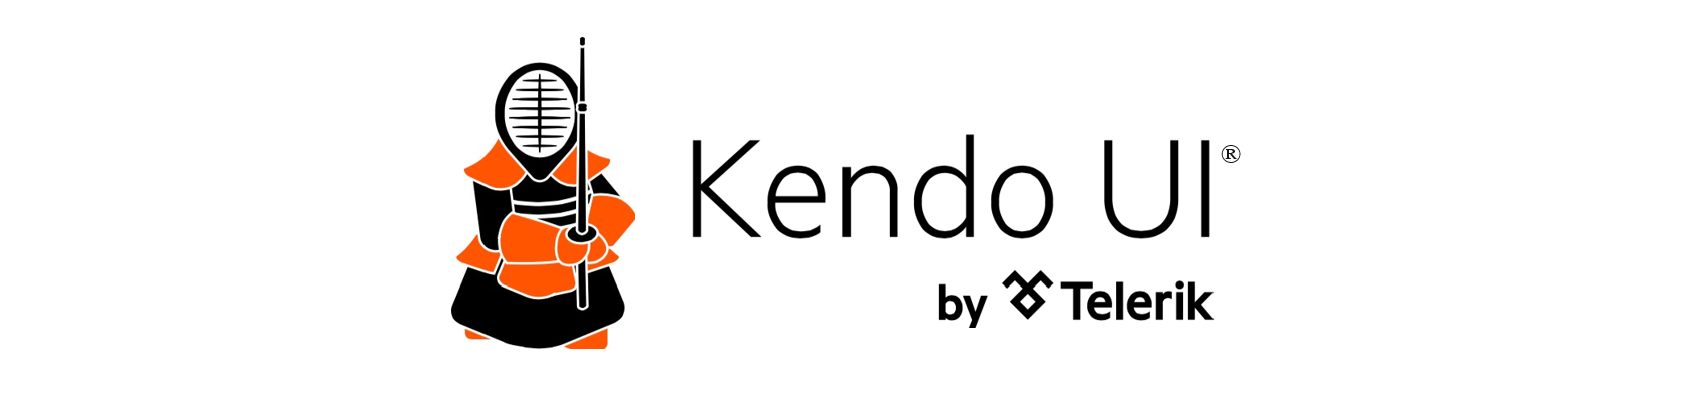 Kendo UI Resources